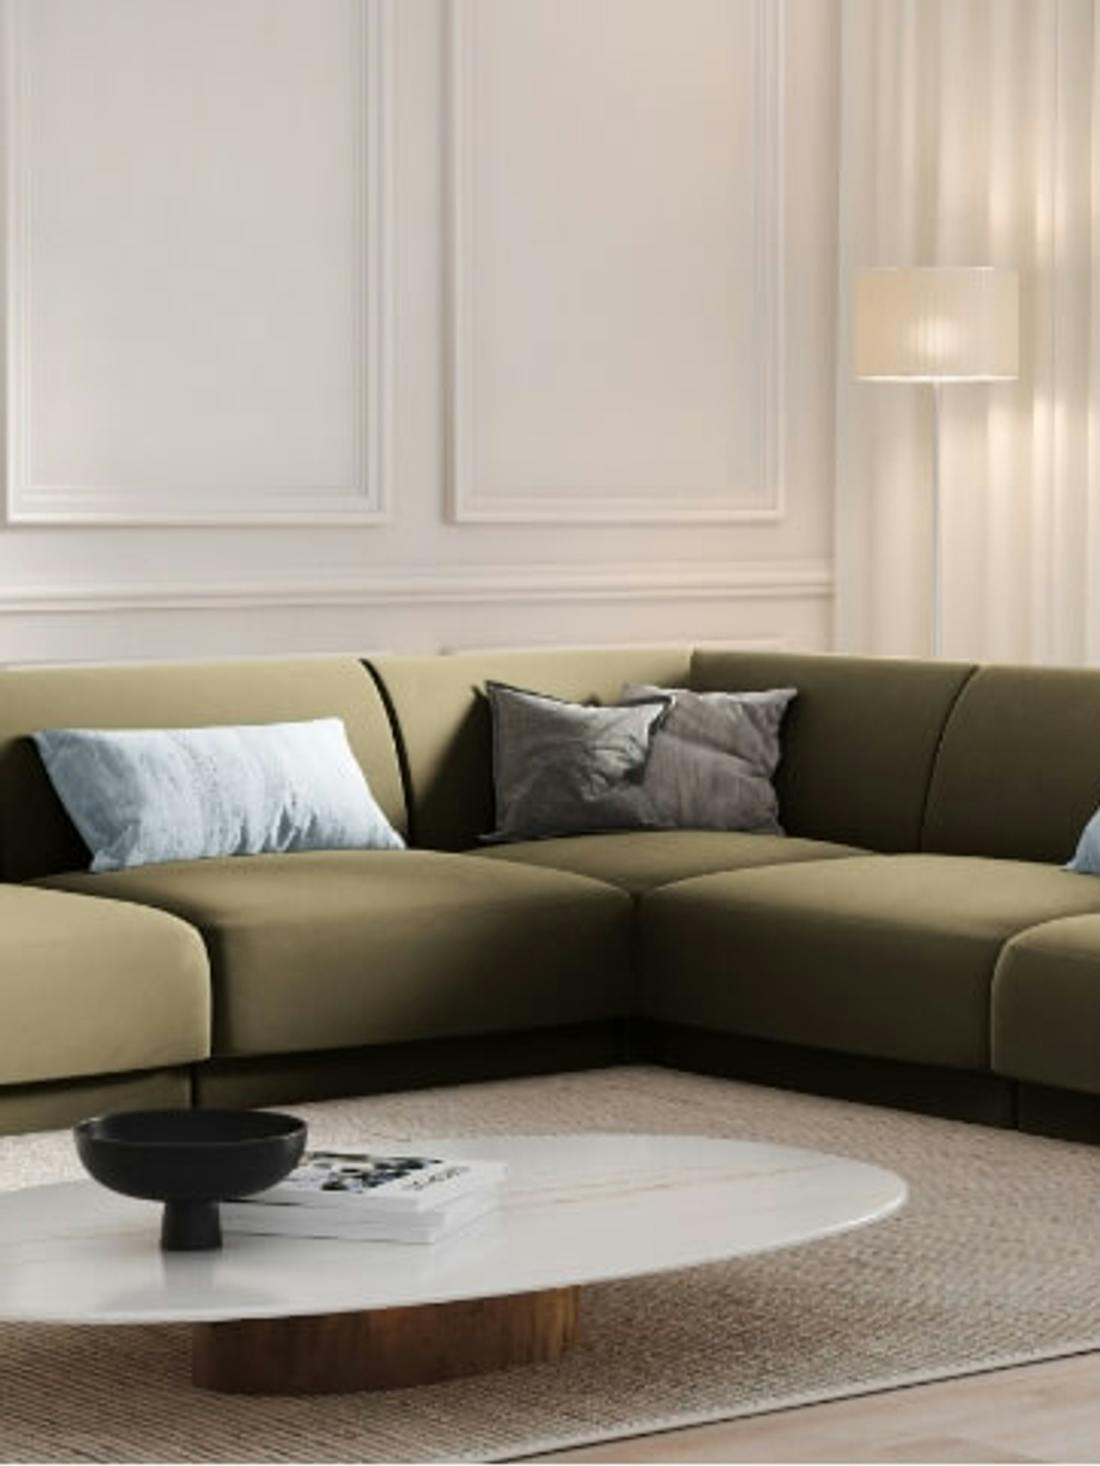 Salon w stylu minimalistycznym z zieloną sofą w centralnym miejscu